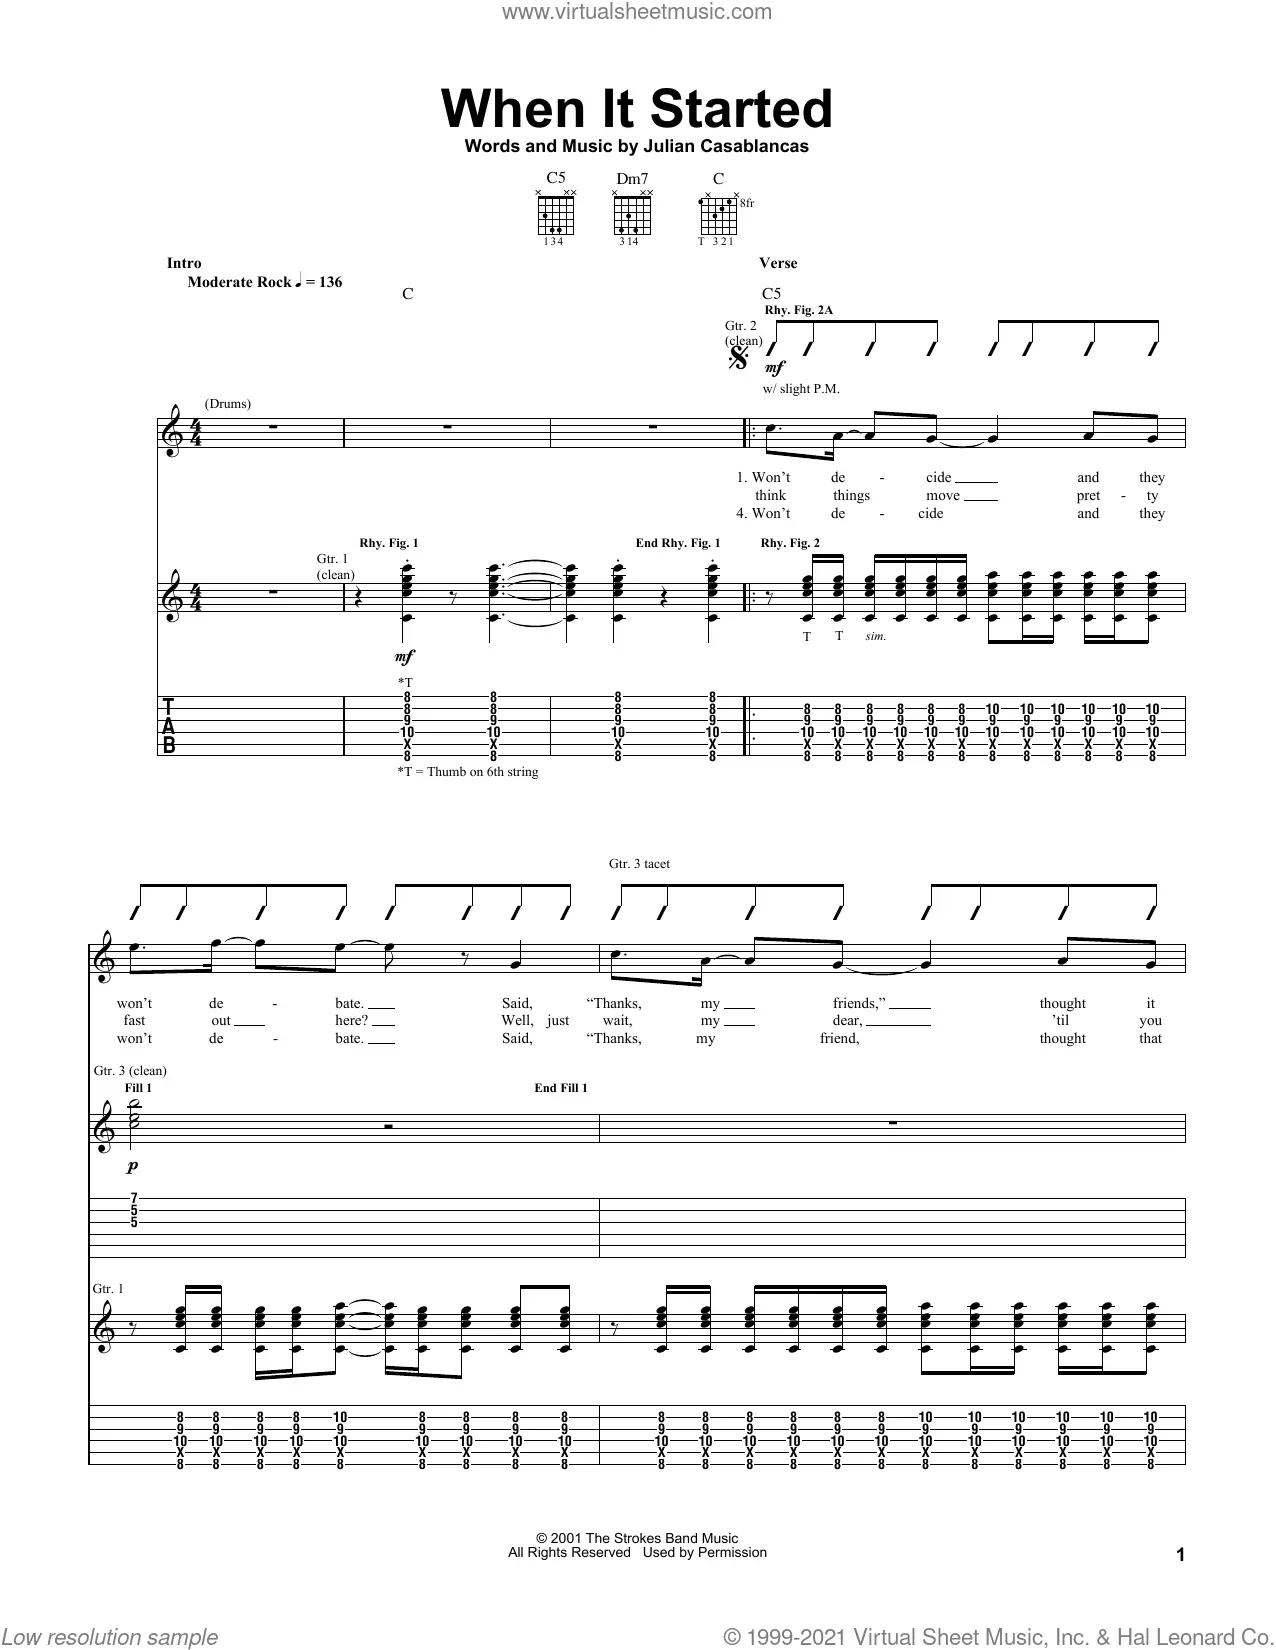 Reptilia – The Strokes Reptilia - piano tutorial